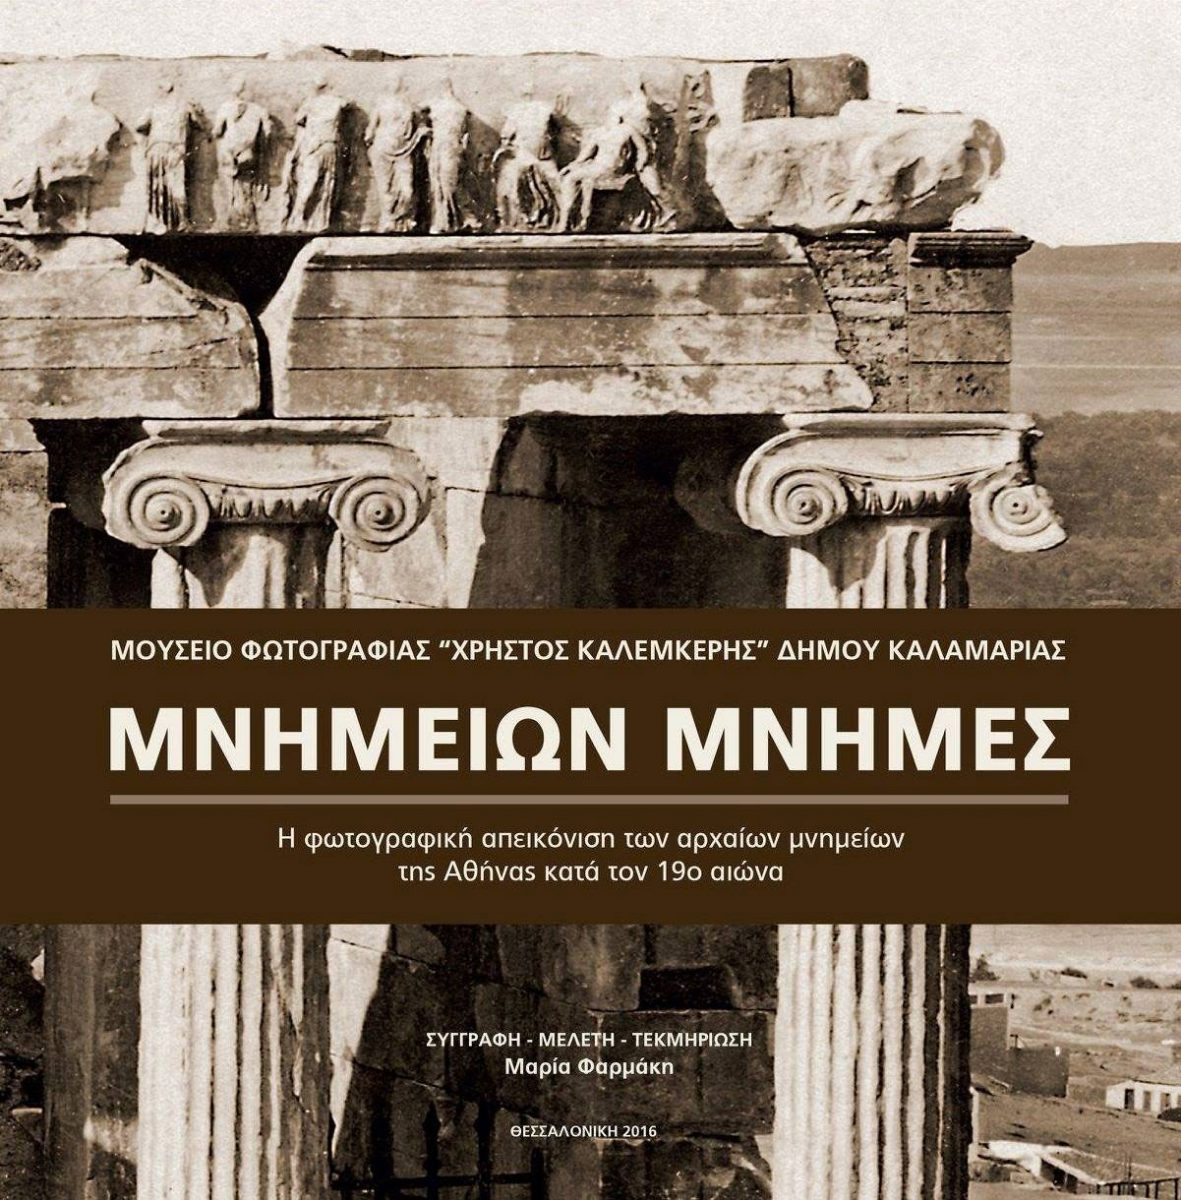 «Μνημείων Μνήμες - η φωτογραφική απεικόνιση των αρχαίων μνημείων της Αθήνας κατά τον 19ο αι.». Το εξώφυλλο της έκδοσης.